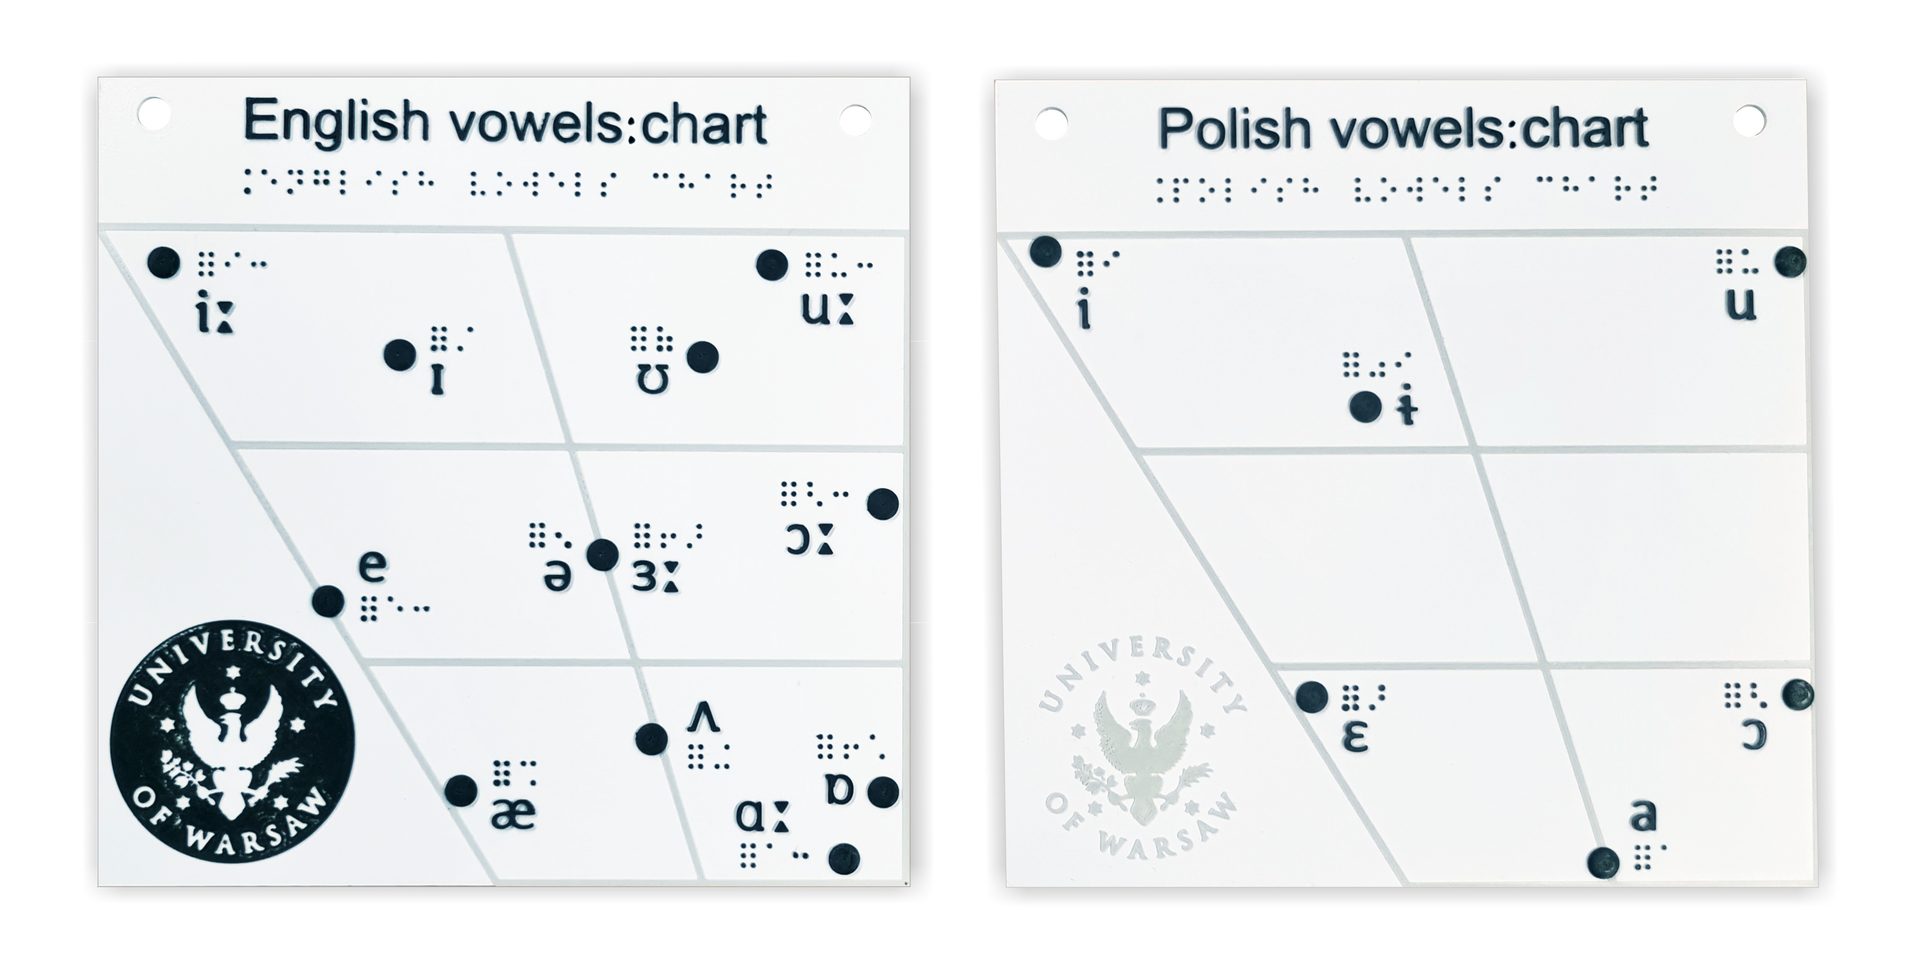 Tablice z diagramami samogłosek polskich i angielskich. Na diagramach oznaczono położenie samogłosek oraz ich oznaczenie symbolami fonetycznymi używanymi w międzynarodowym standardzie IPA oraz ich odpowiednikami stosowanymi w alfabecie Braille’a.